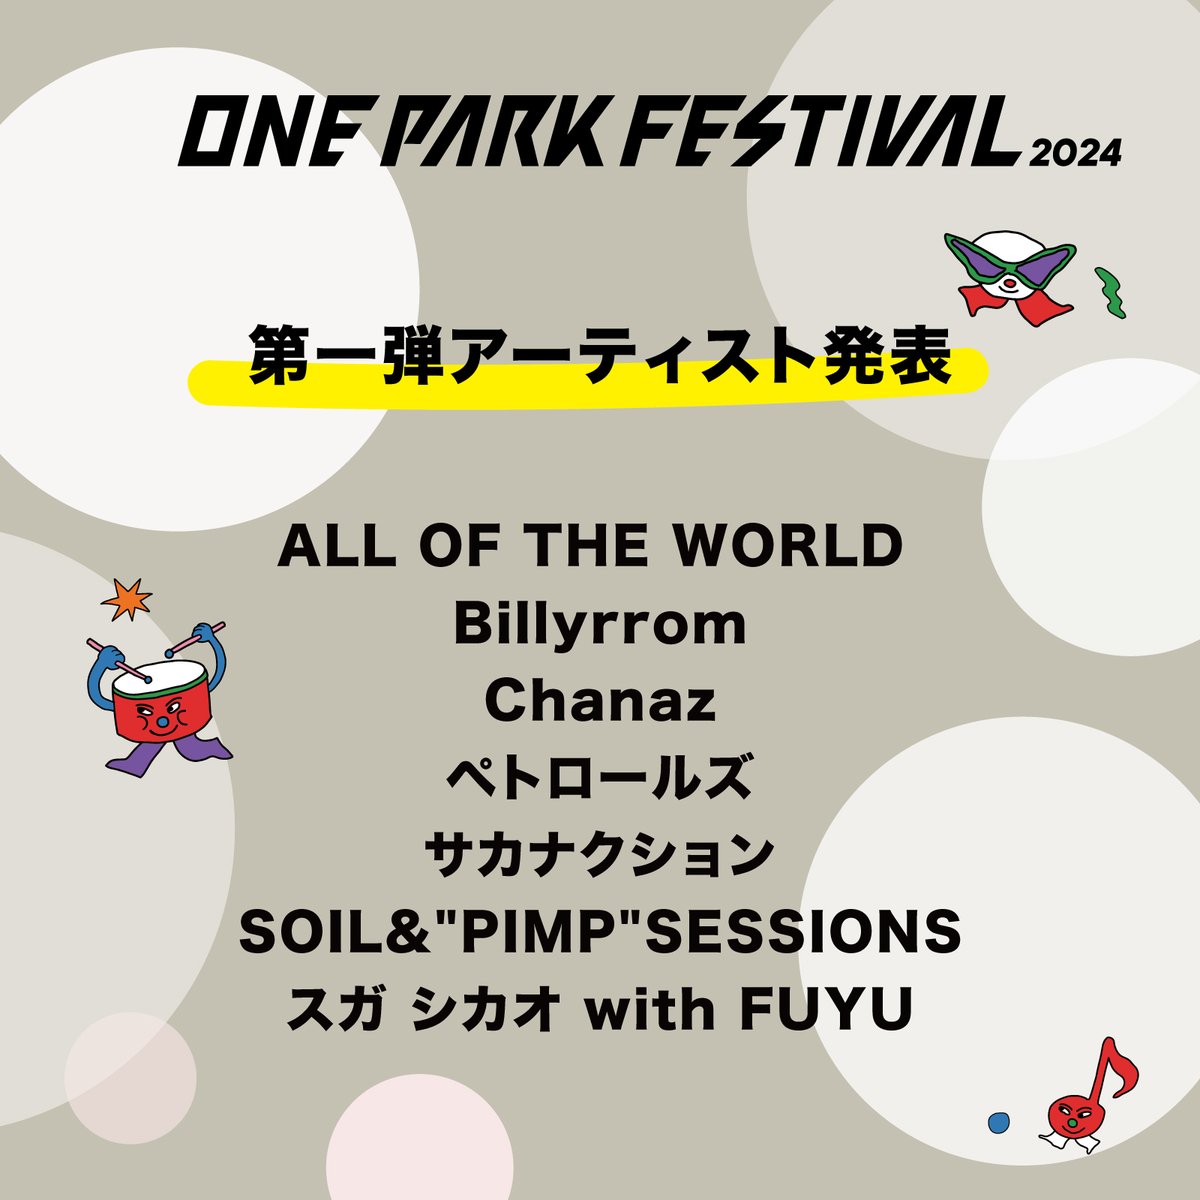 サカナクションがONE PARK FESTIVAL2024に出演決定！

ONE PARK FESTIVAL2024
2024 年 9 月 7日(土)/8日(日) 福井市中央公園 特設ステージ

詳細はイベントHPへ
oneparkfestival.jp